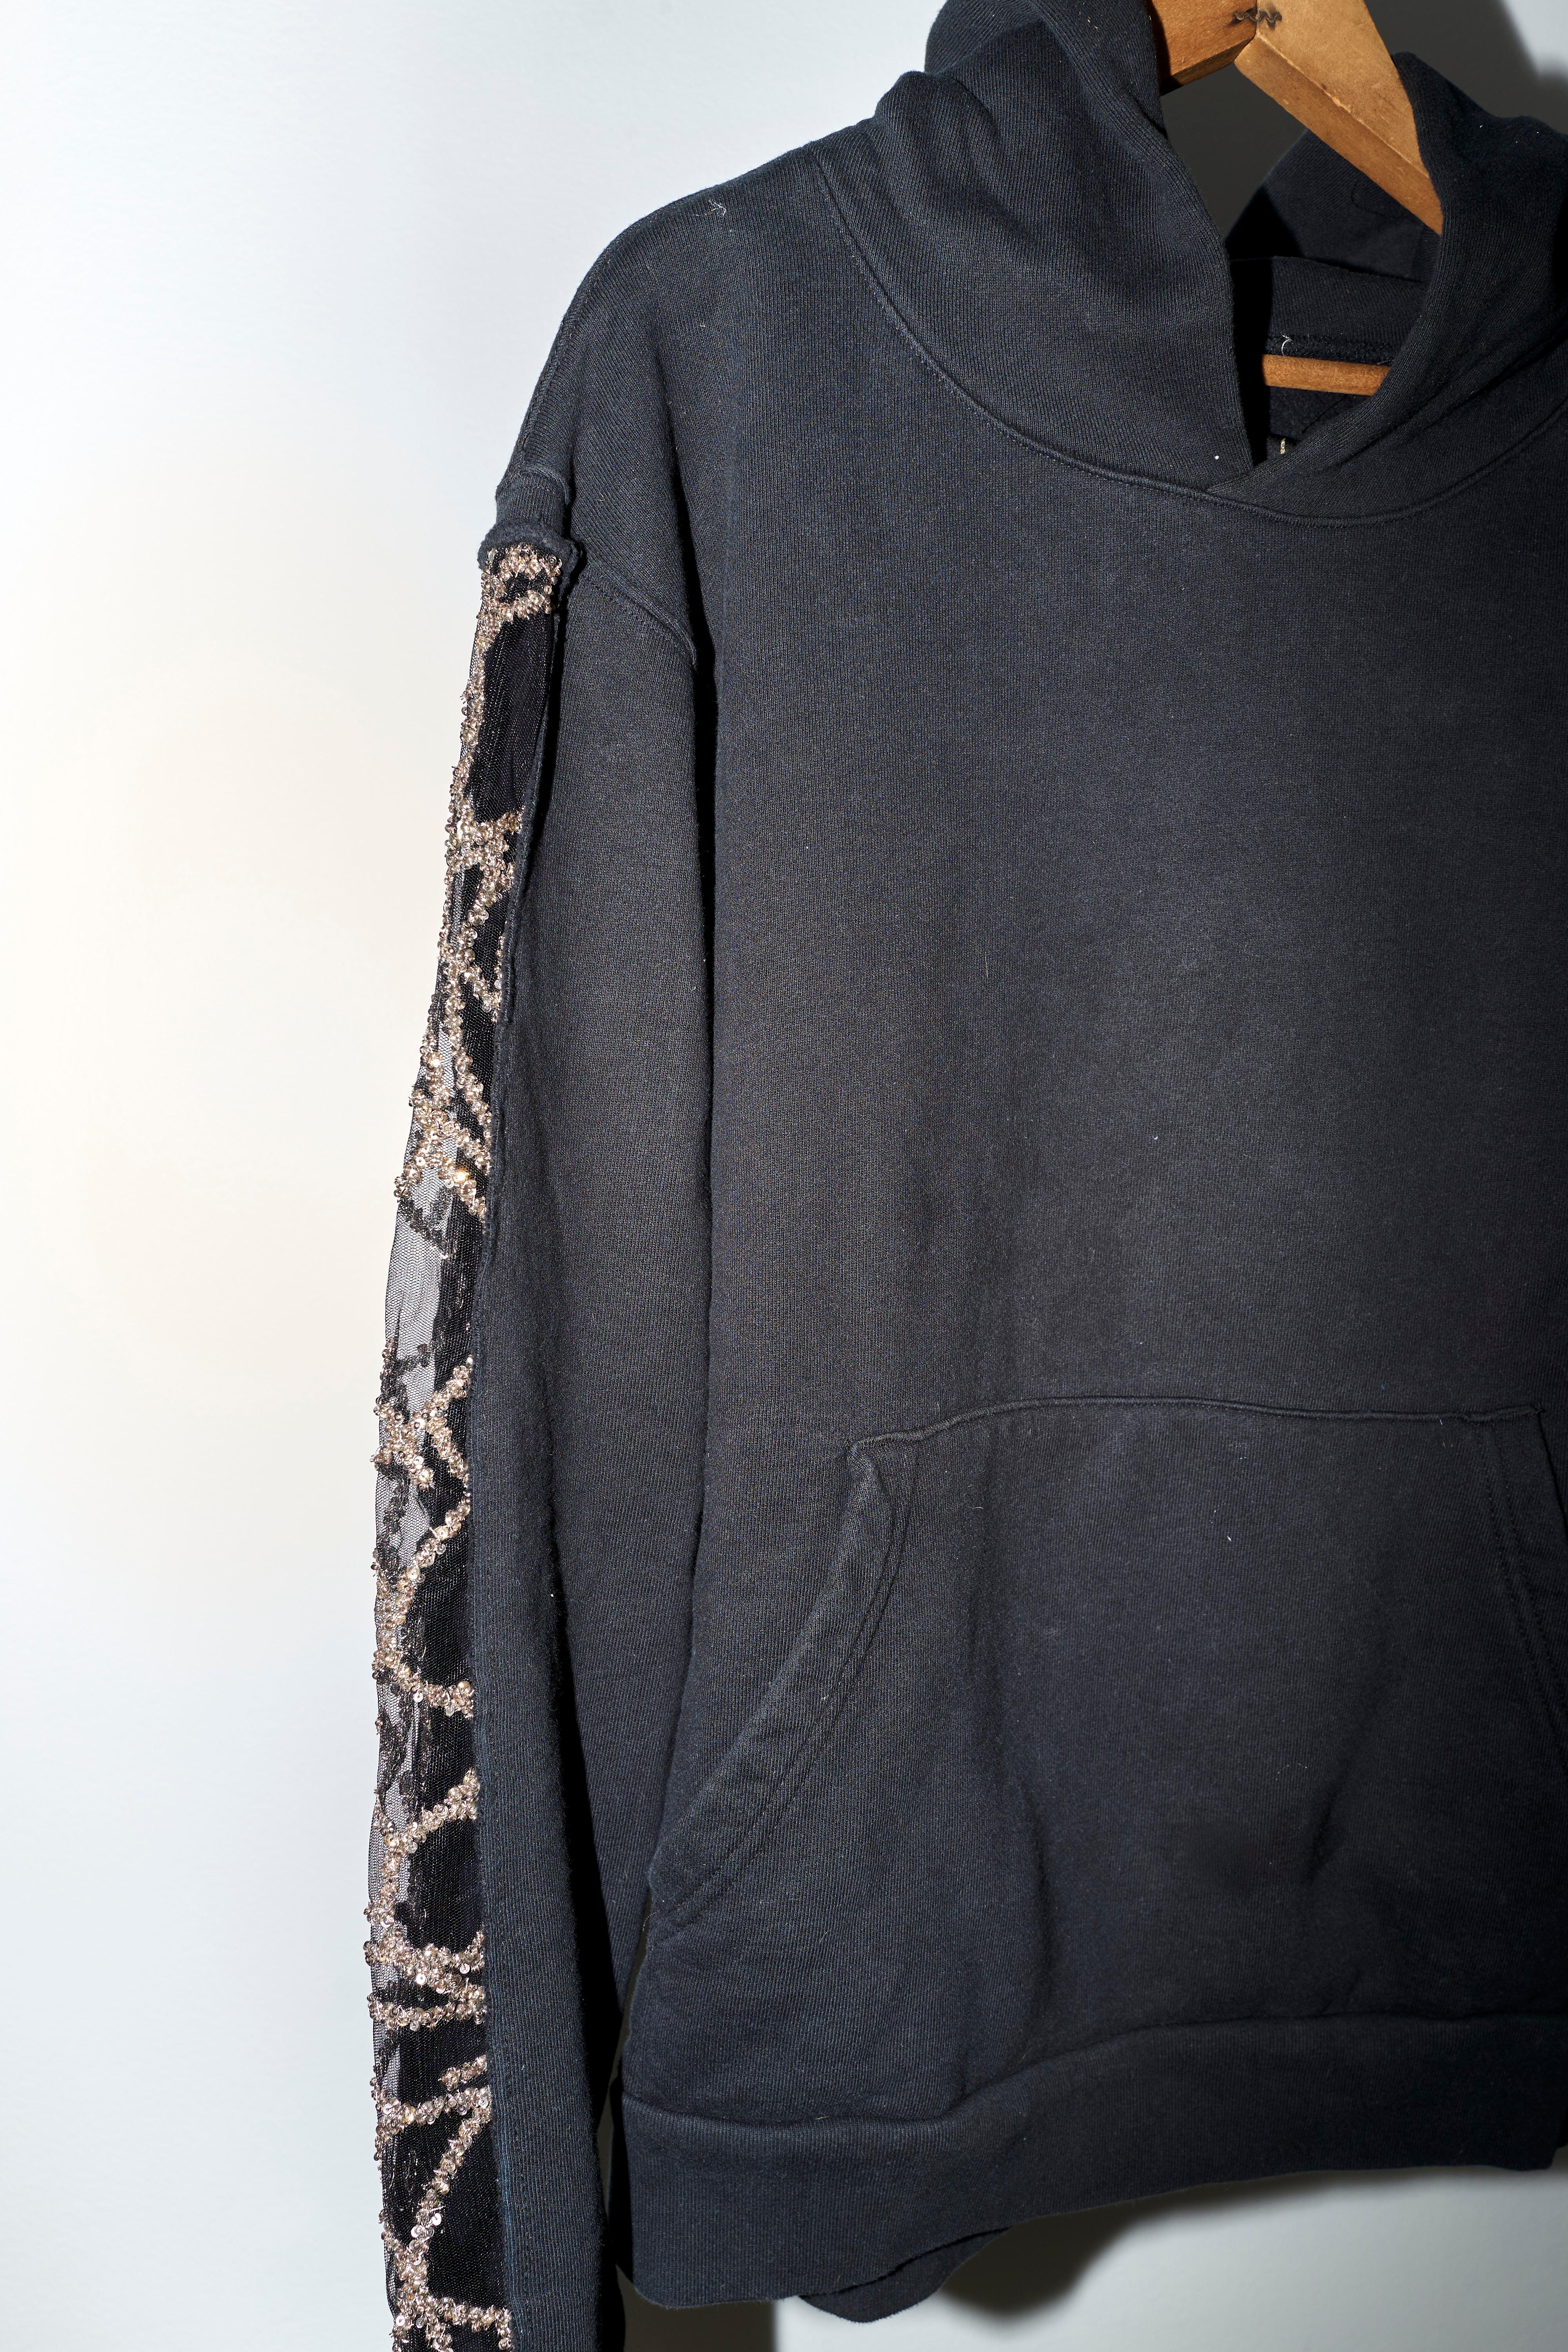 Black Hoodie Sweatshirt Transparent Sheer Mesh Chrystal Embroidery J Dauphin For Sale 3